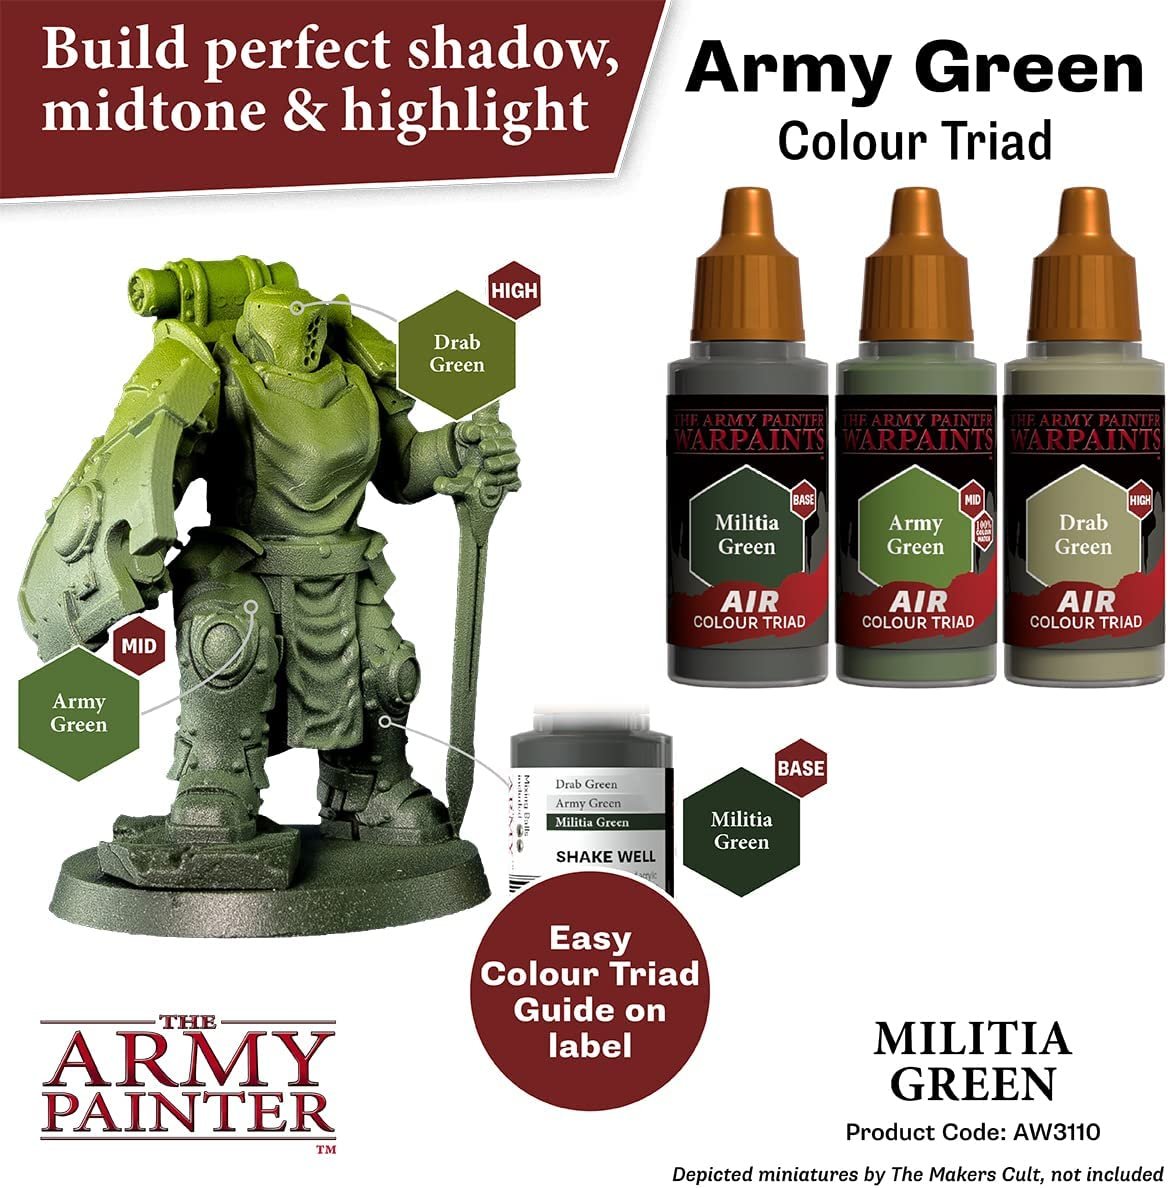 The Army Painter - Warpaints Air: Militia Green (18ml/0.6oz)